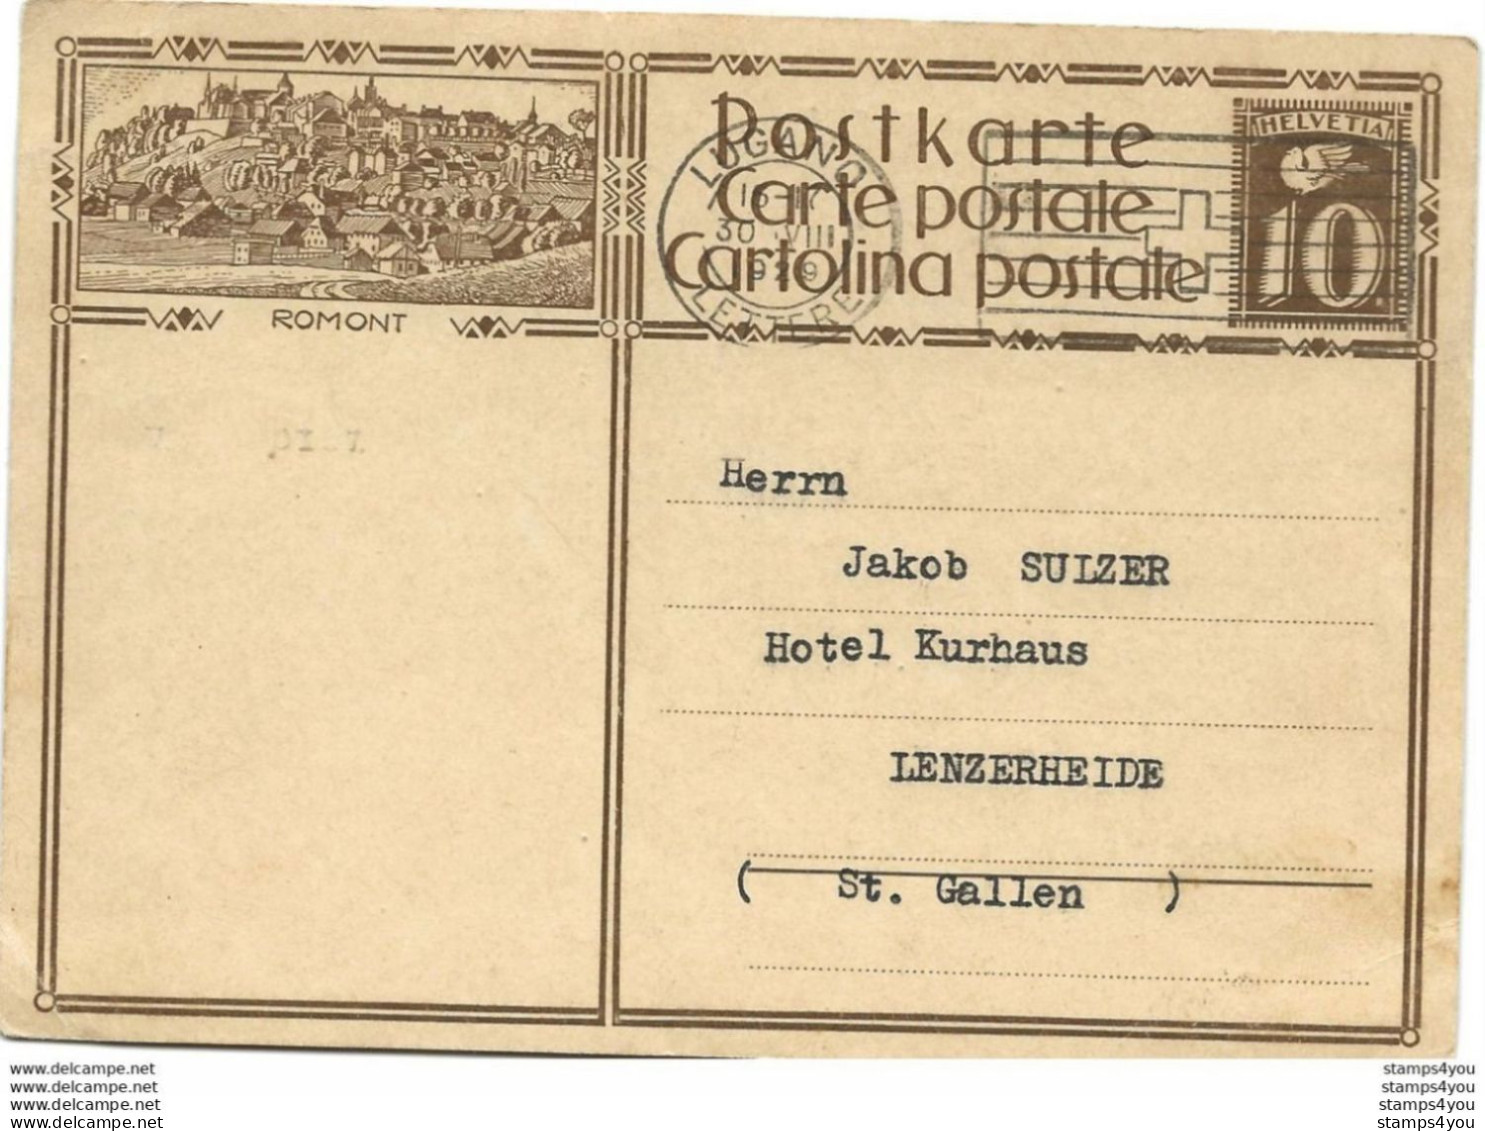 207 - 78 - Entier Postal Avec Illustration "Romont" Oblit Mécanique 1929 - Ganzsachen